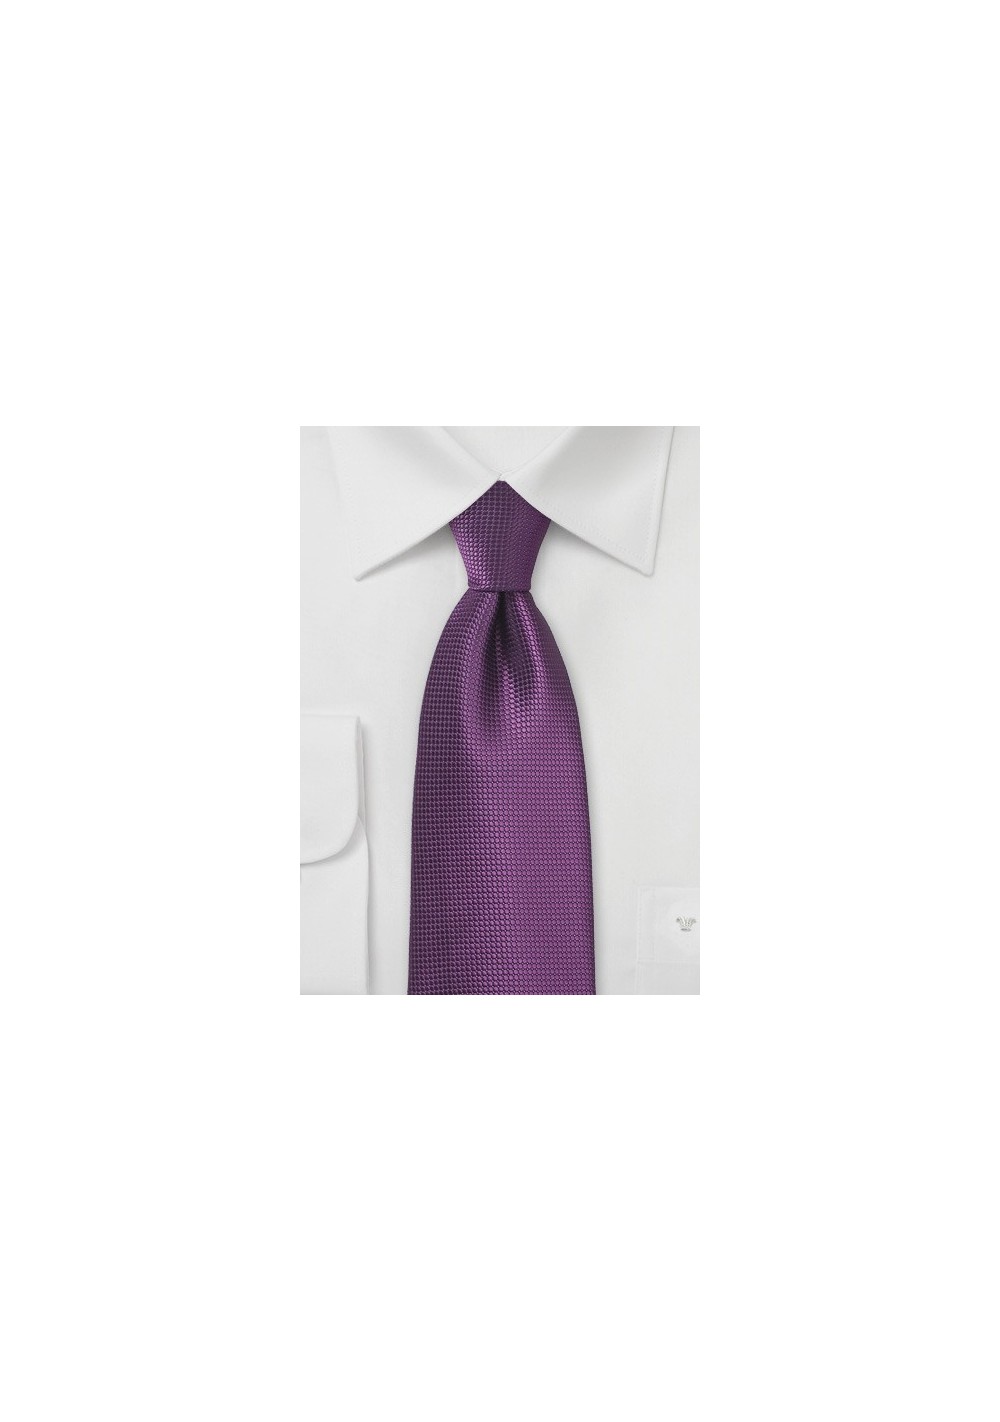 Textured Necktie in Grape Purple